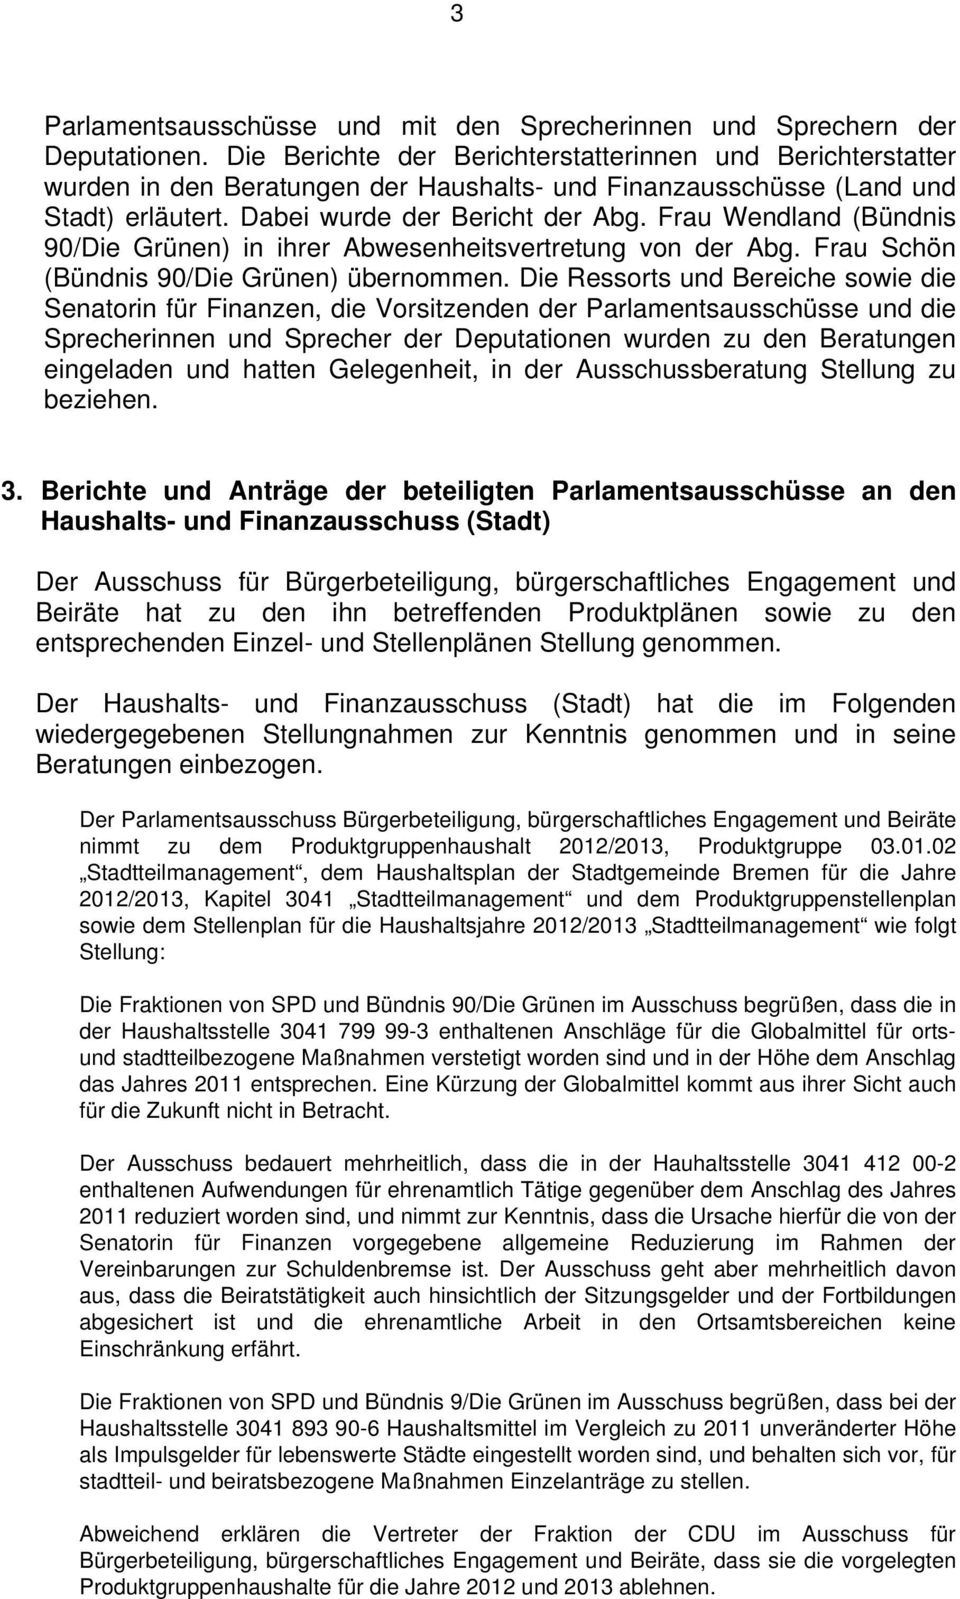 Frau Wendland (Bündnis 90/Die Grünen) in ihrer Abwesenheitsvertretung von der Abg. Frau Schön (Bündnis 90/Die Grünen) übernommen.